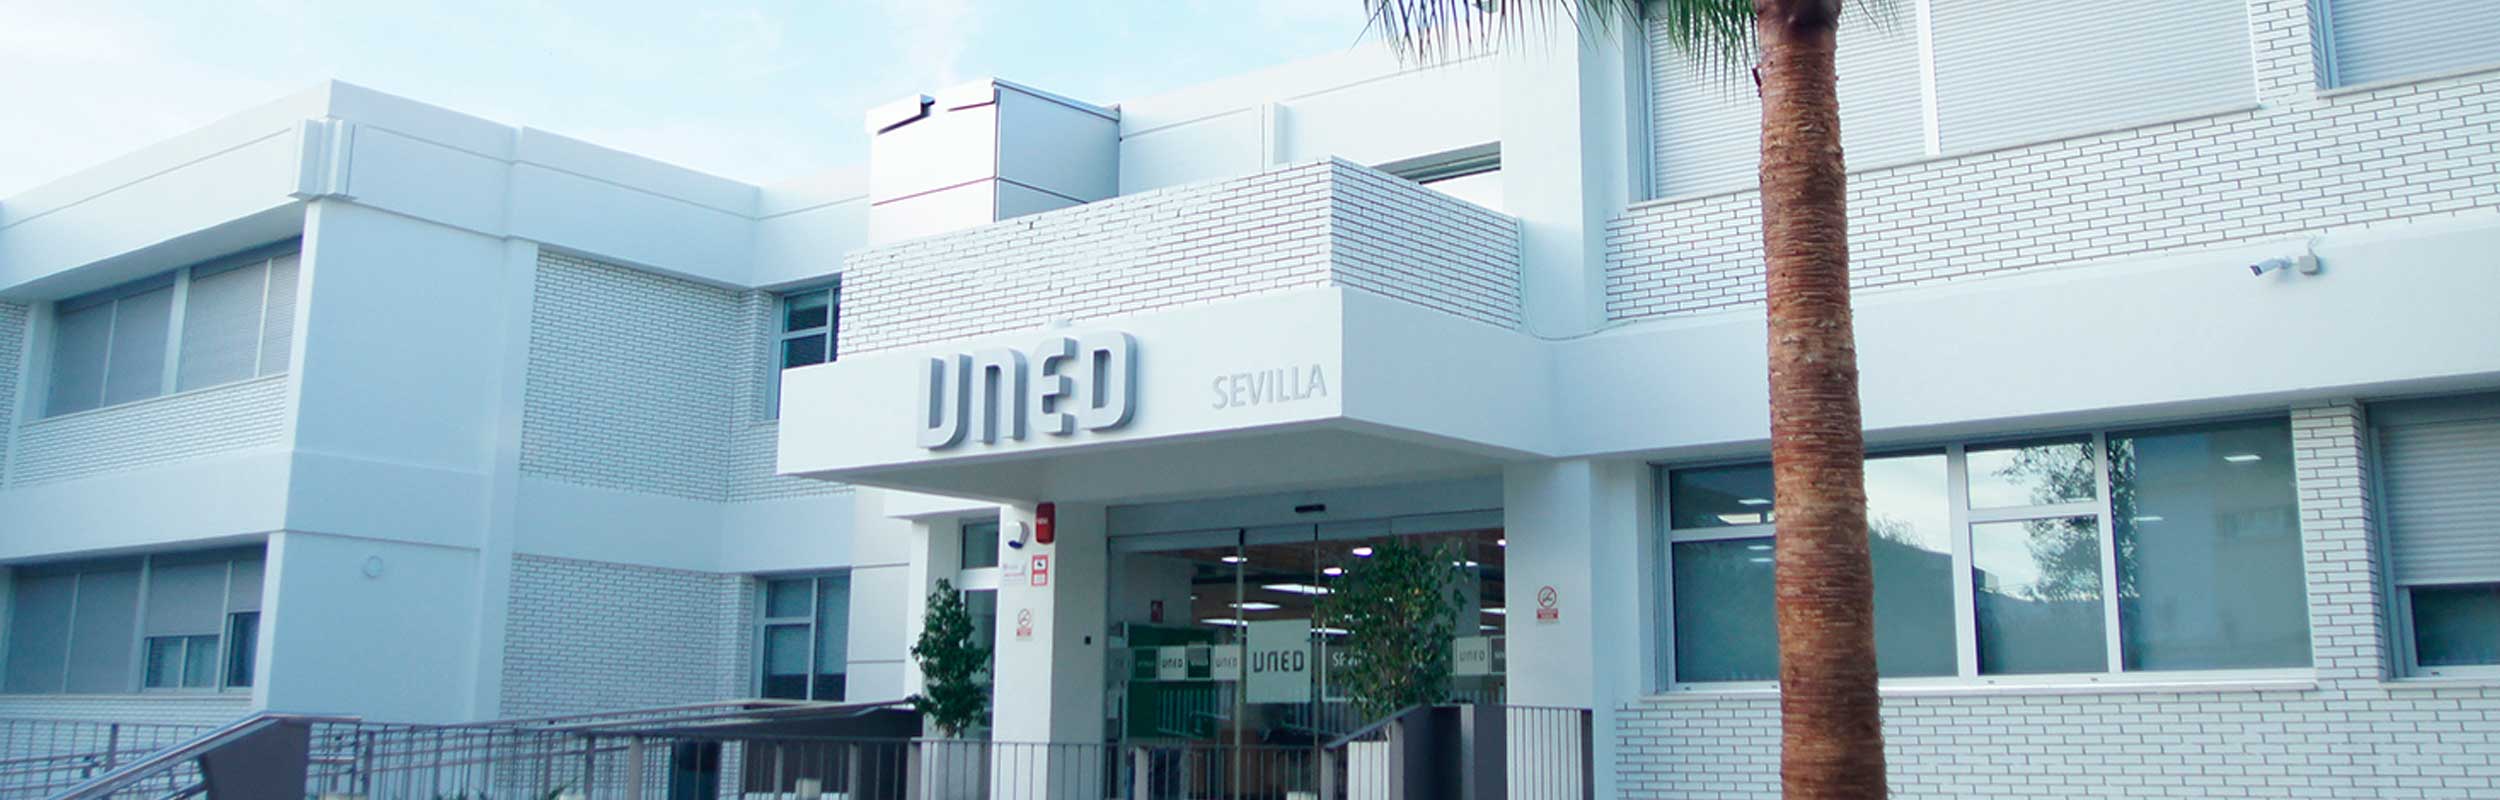 Centro Asociado de Sevilla en la UNED